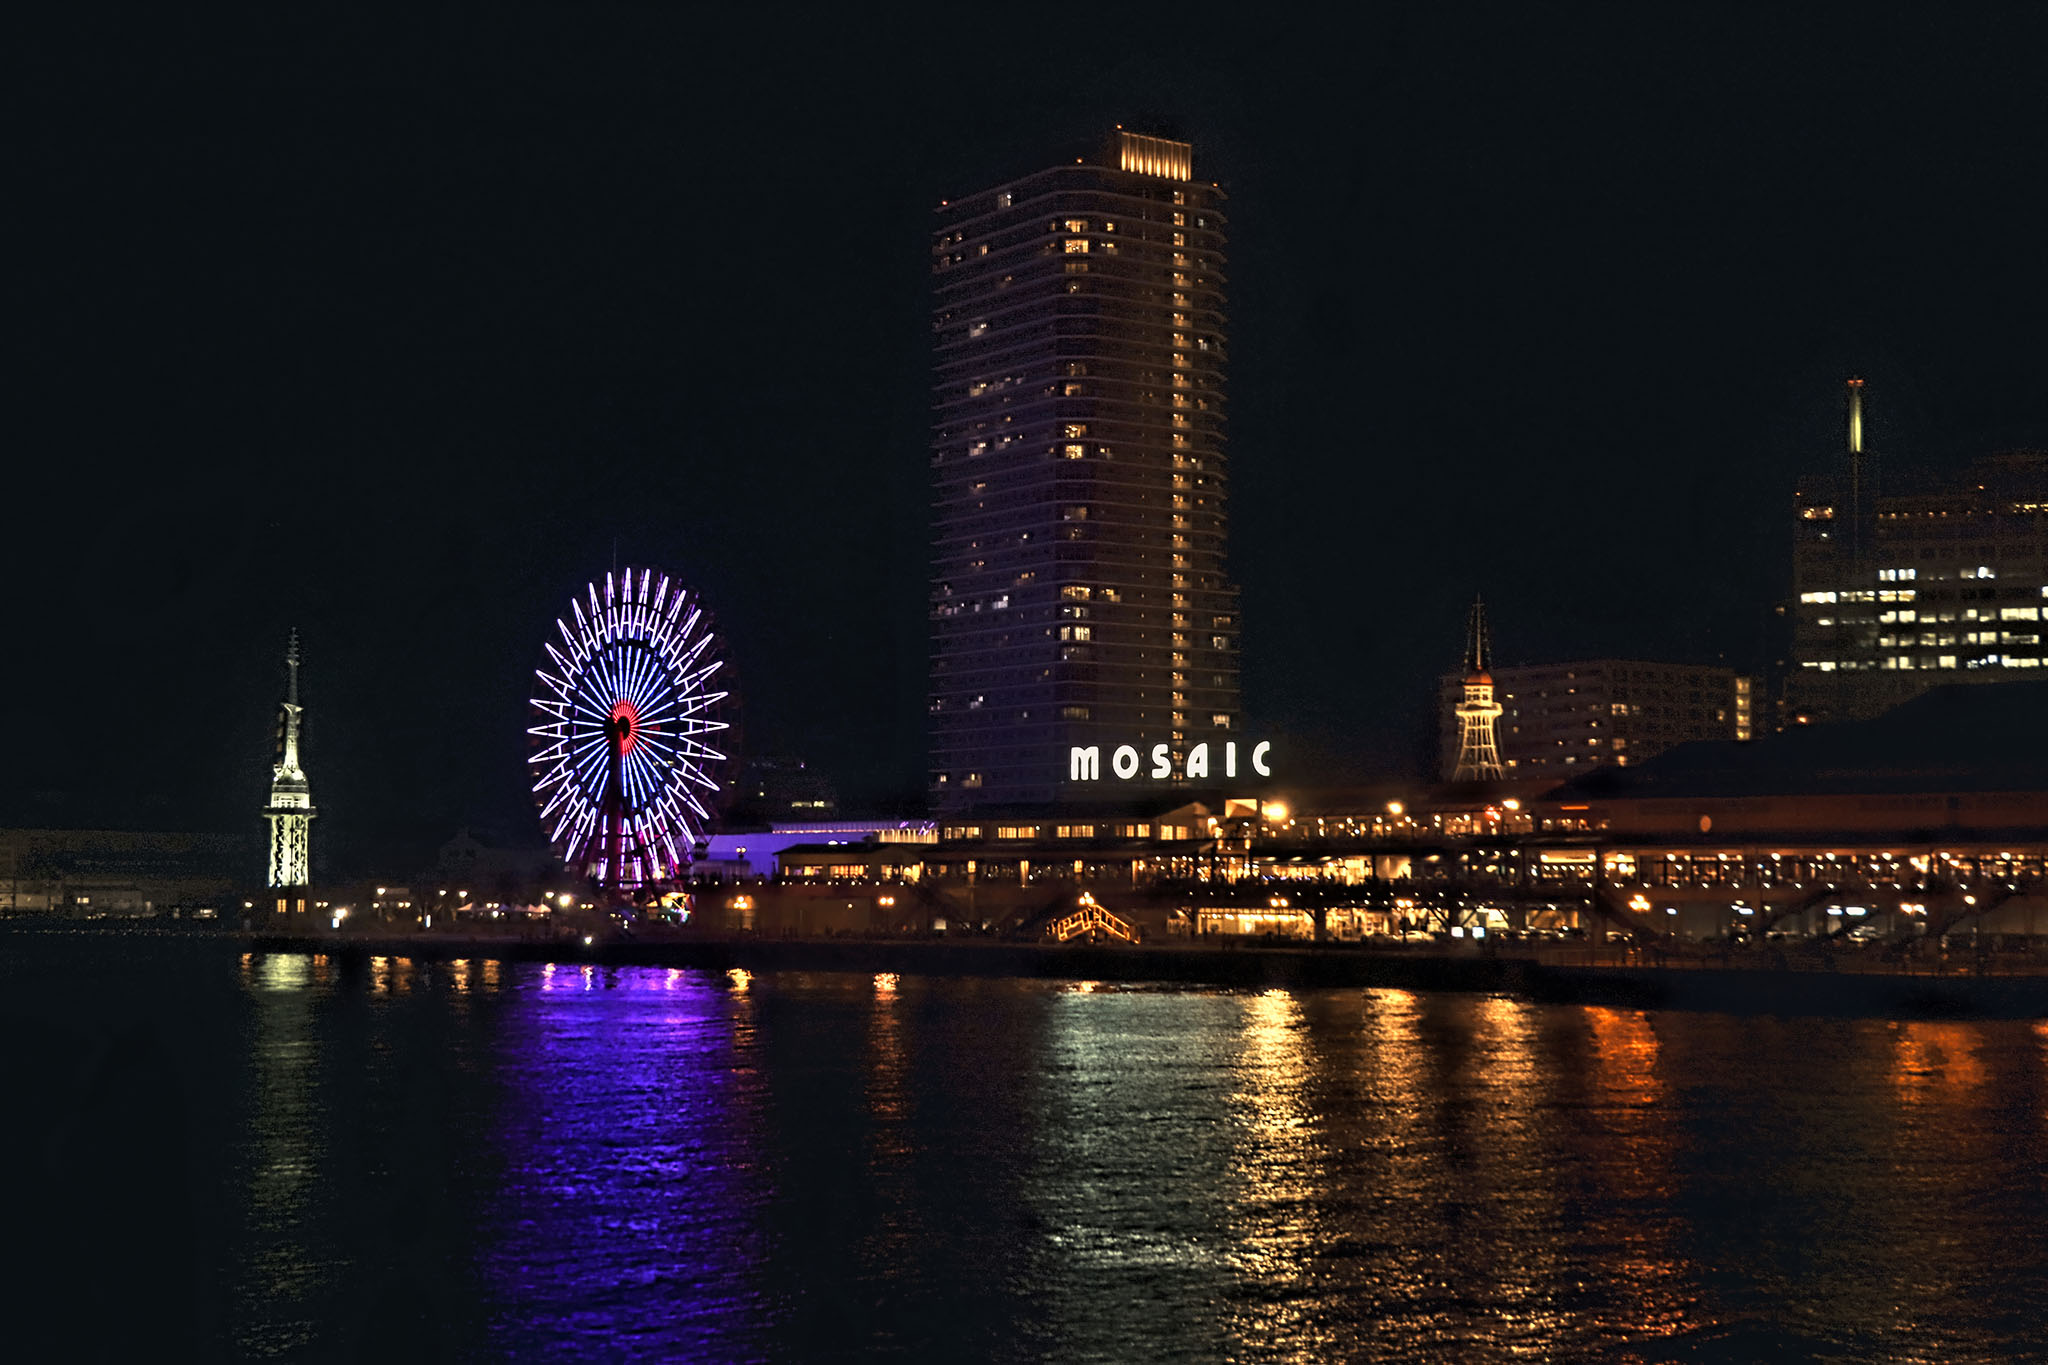 神戸港の夜景